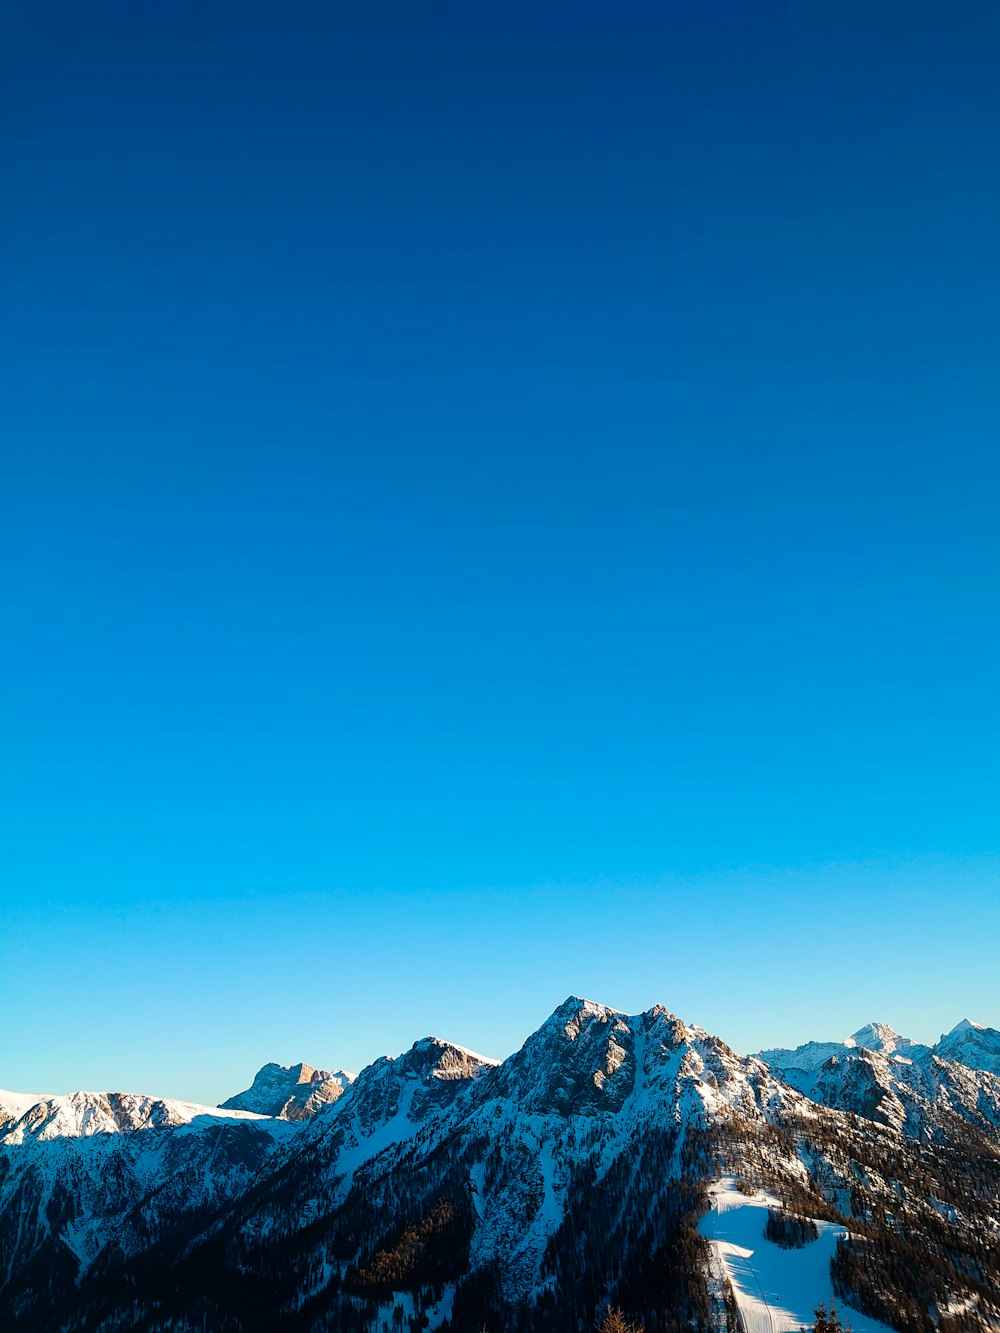 une personne sur une planche à neige au sommet d’une montagne